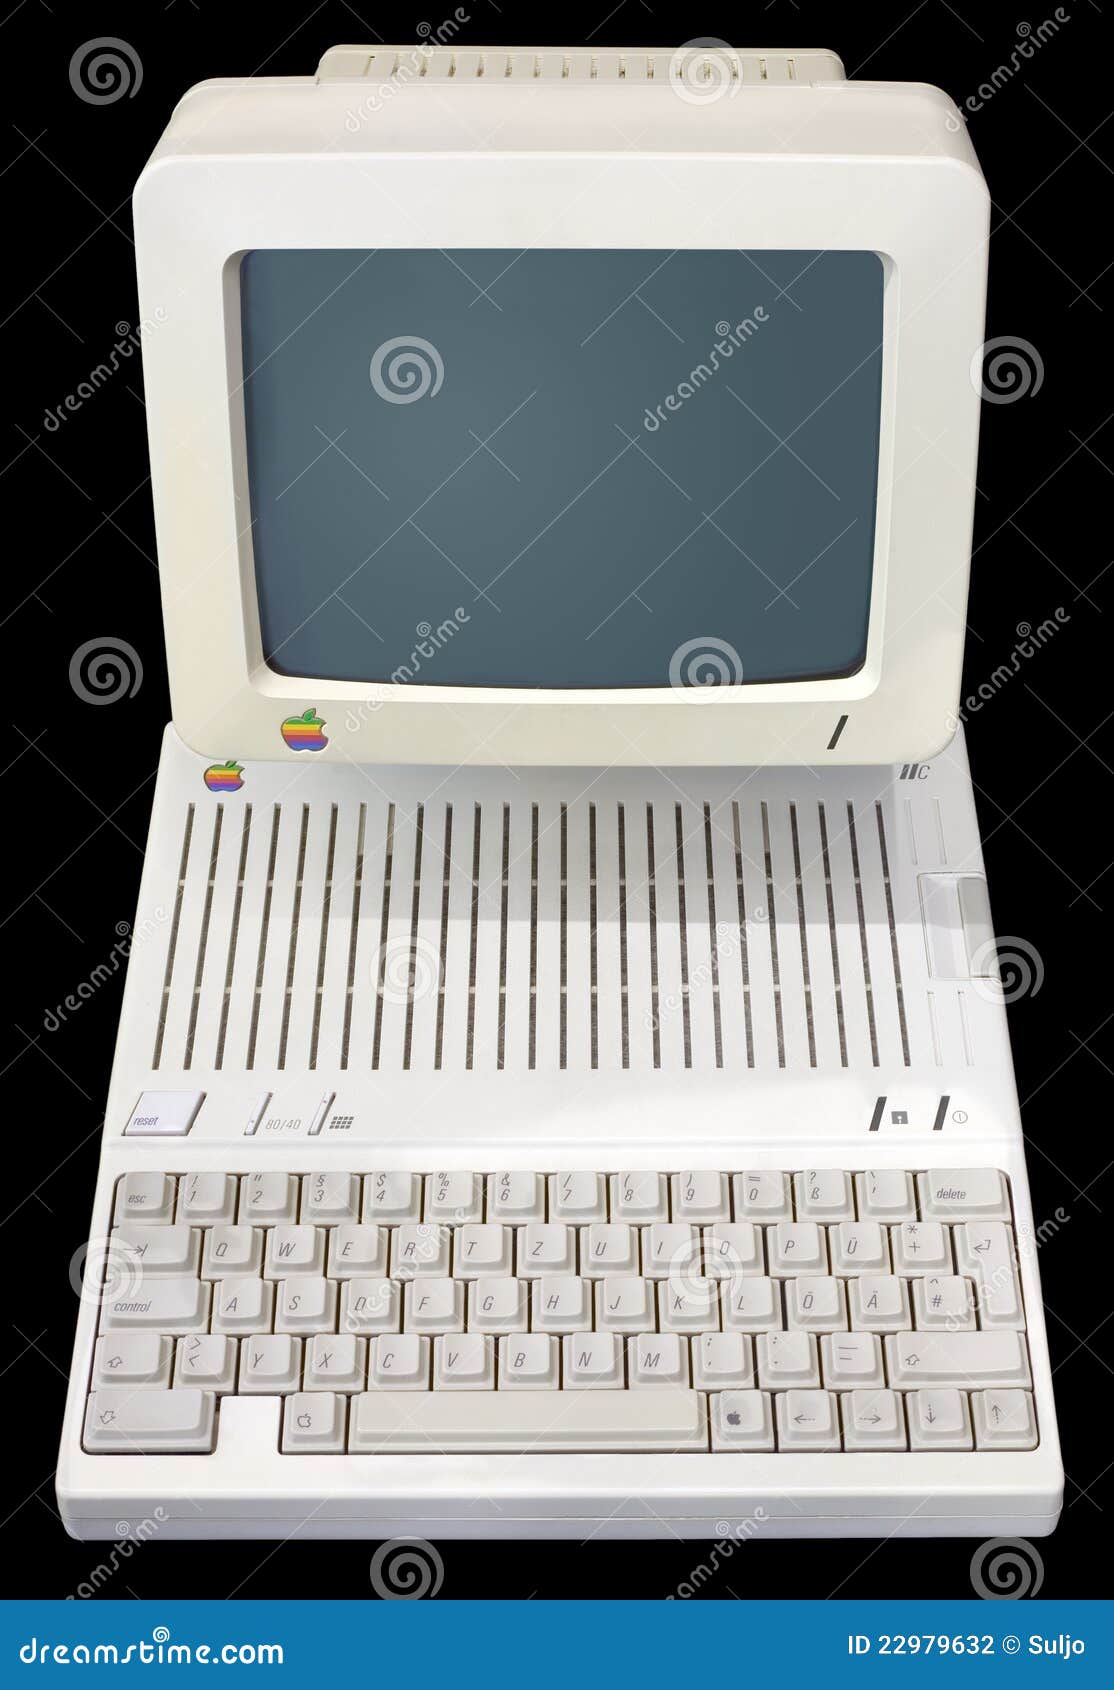 Apple Iic Editorial Photography Image Of Machine Electronics 22979632